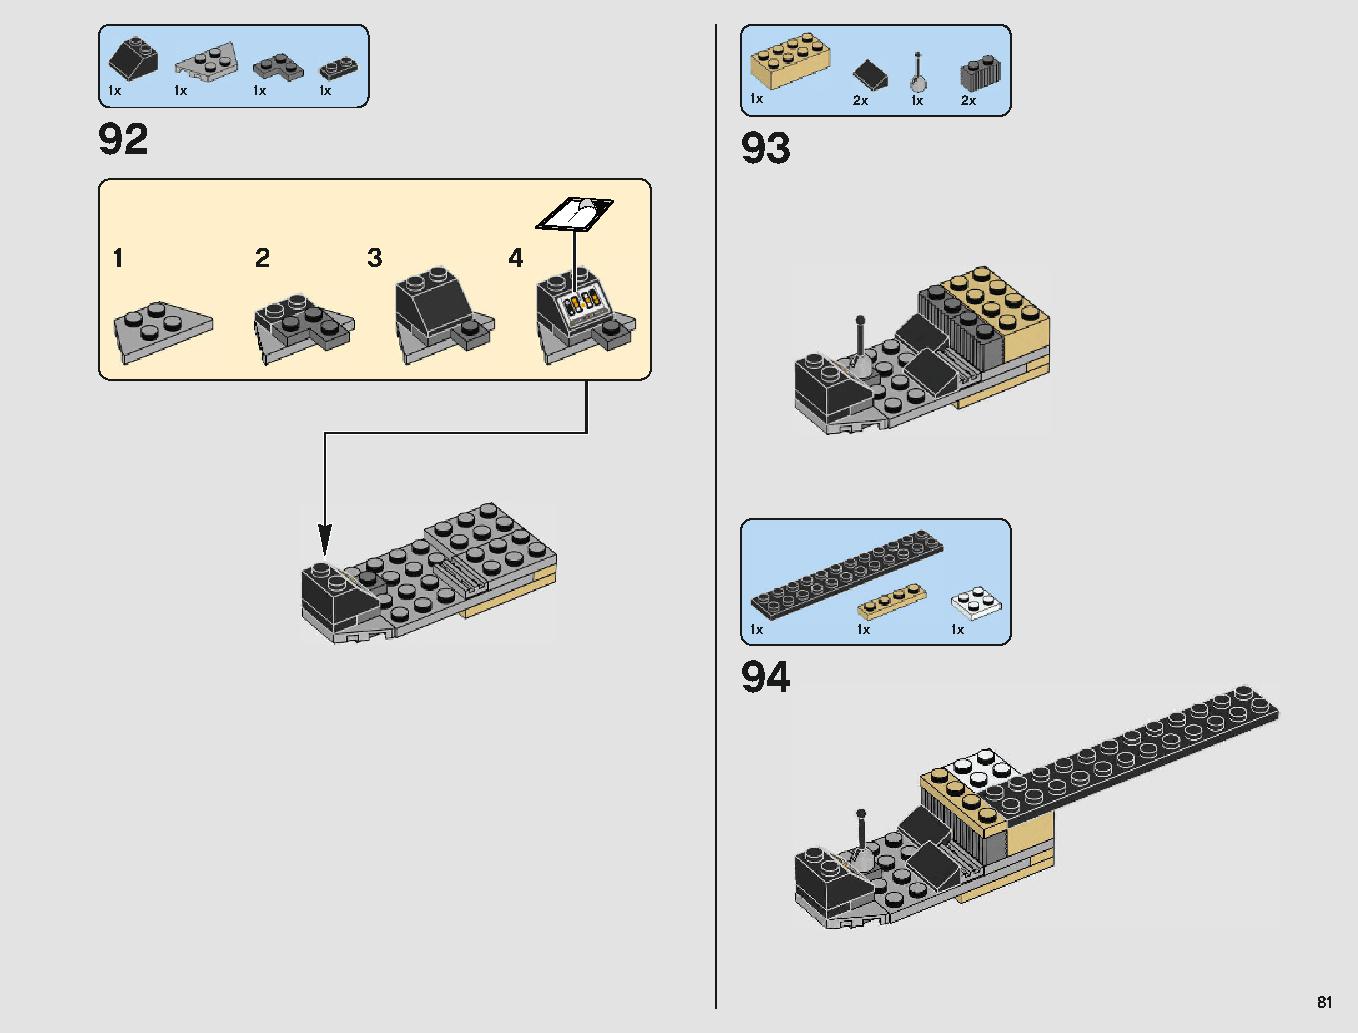 ミレニアム・ファルコン 75212 レゴの商品情報 レゴの説明書・組立方法 81 page